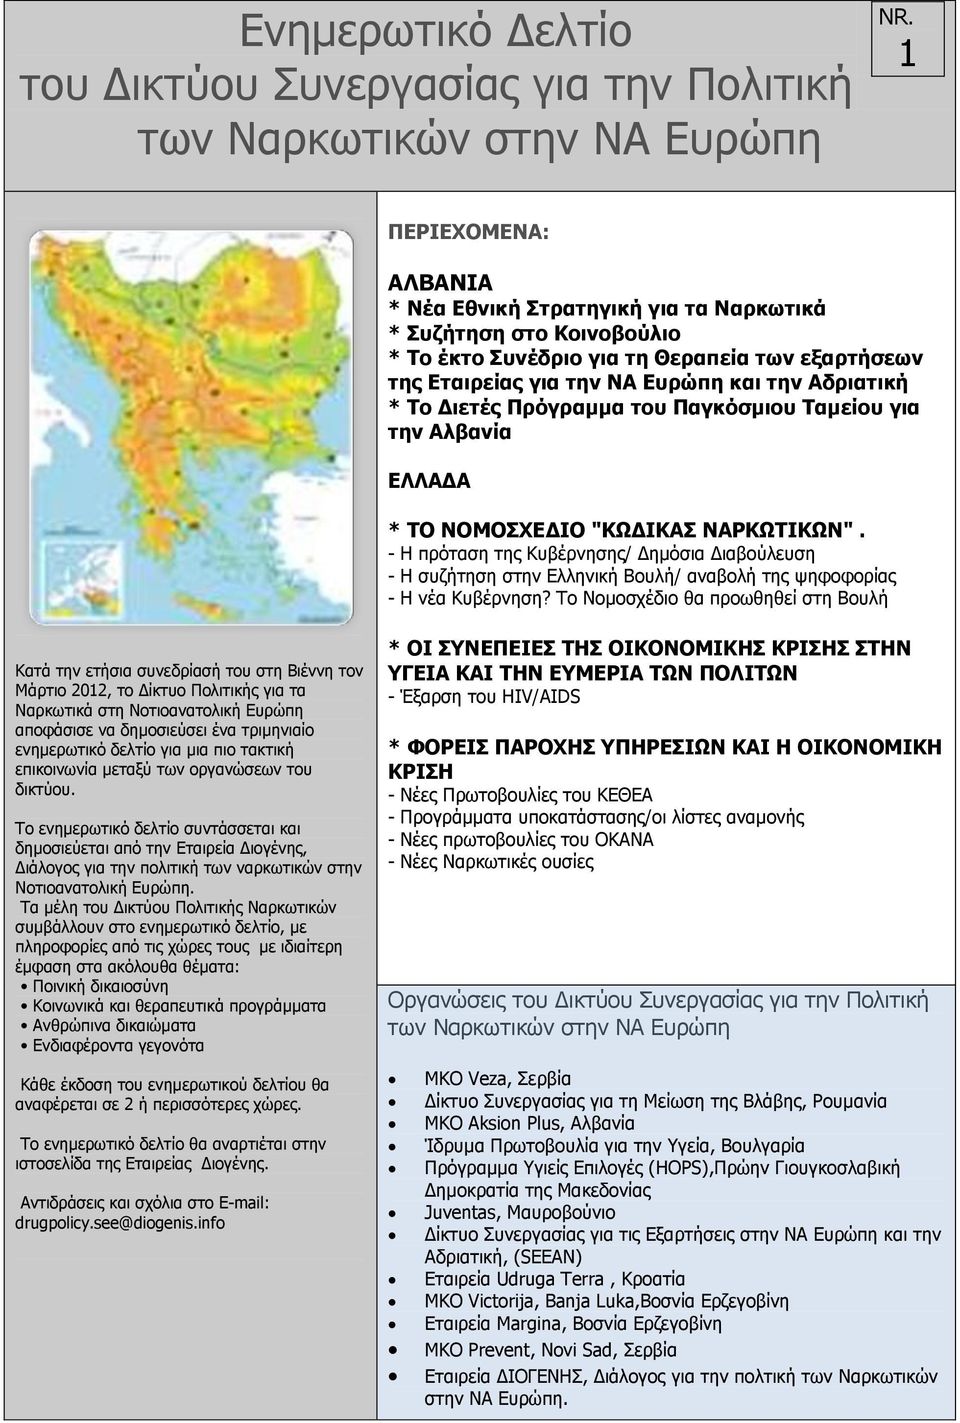 Διετές Πρόγραμμα του Παγκόσμιου Ταμείου για την Αλβανία ΕΛΛΑΔΑ * ΤΟ ΝΟΜΟΣΧΕΔΙΟ "ΚΩΔΙΚΑΣ ΝΑΡΚΩΤΙΚΩΝ".